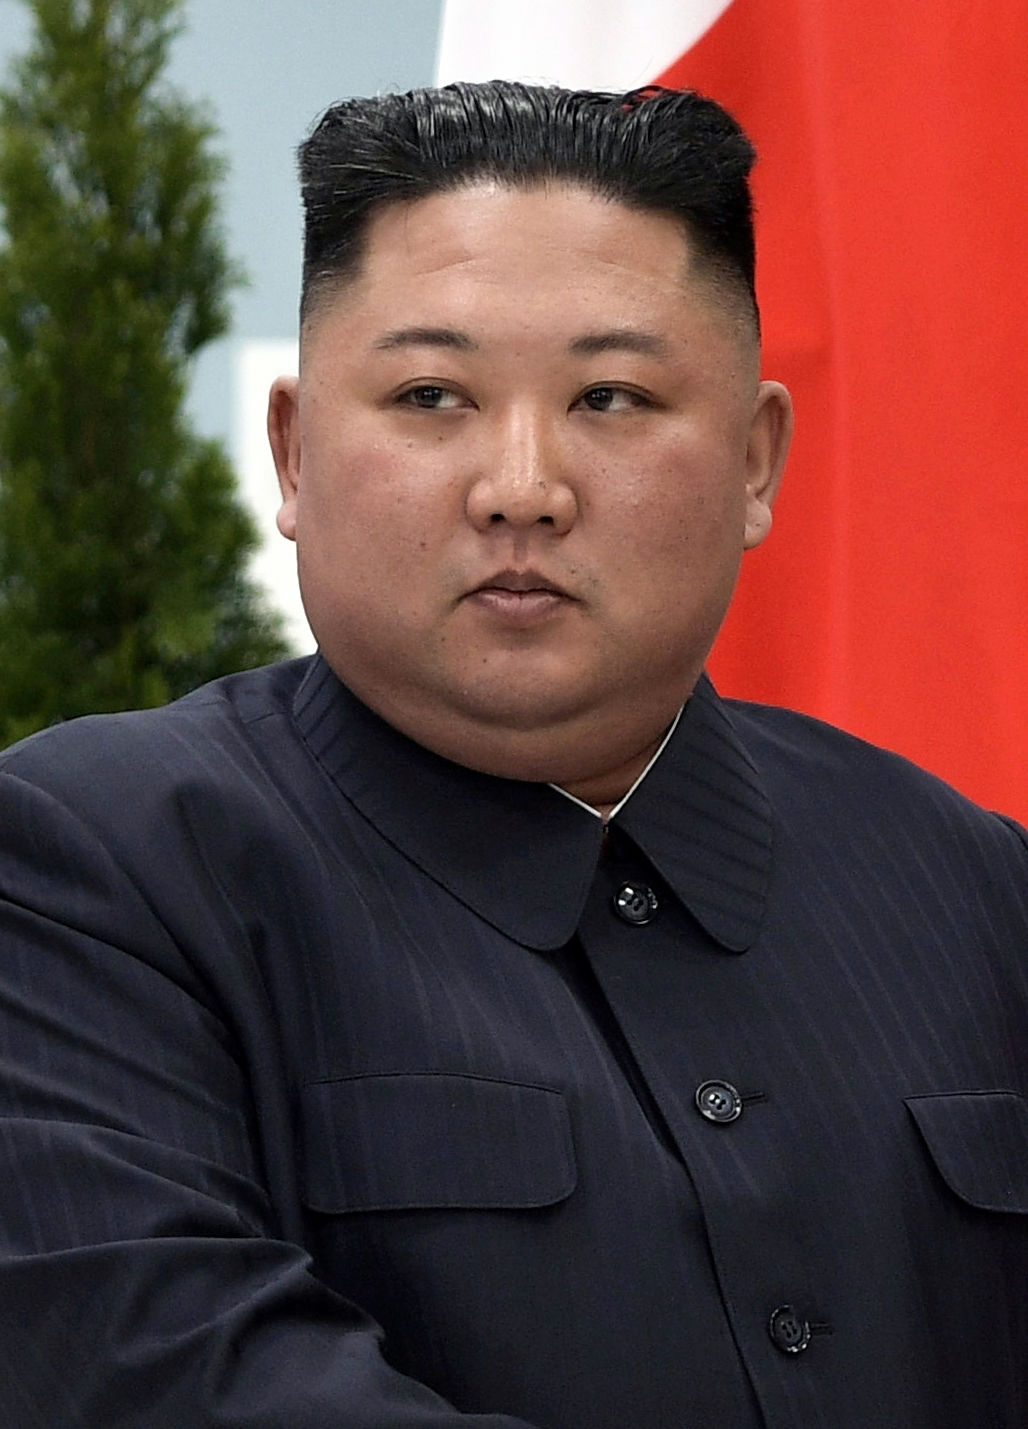 عکسی از رهبر کره شمالی در جشن وزارت خارجه